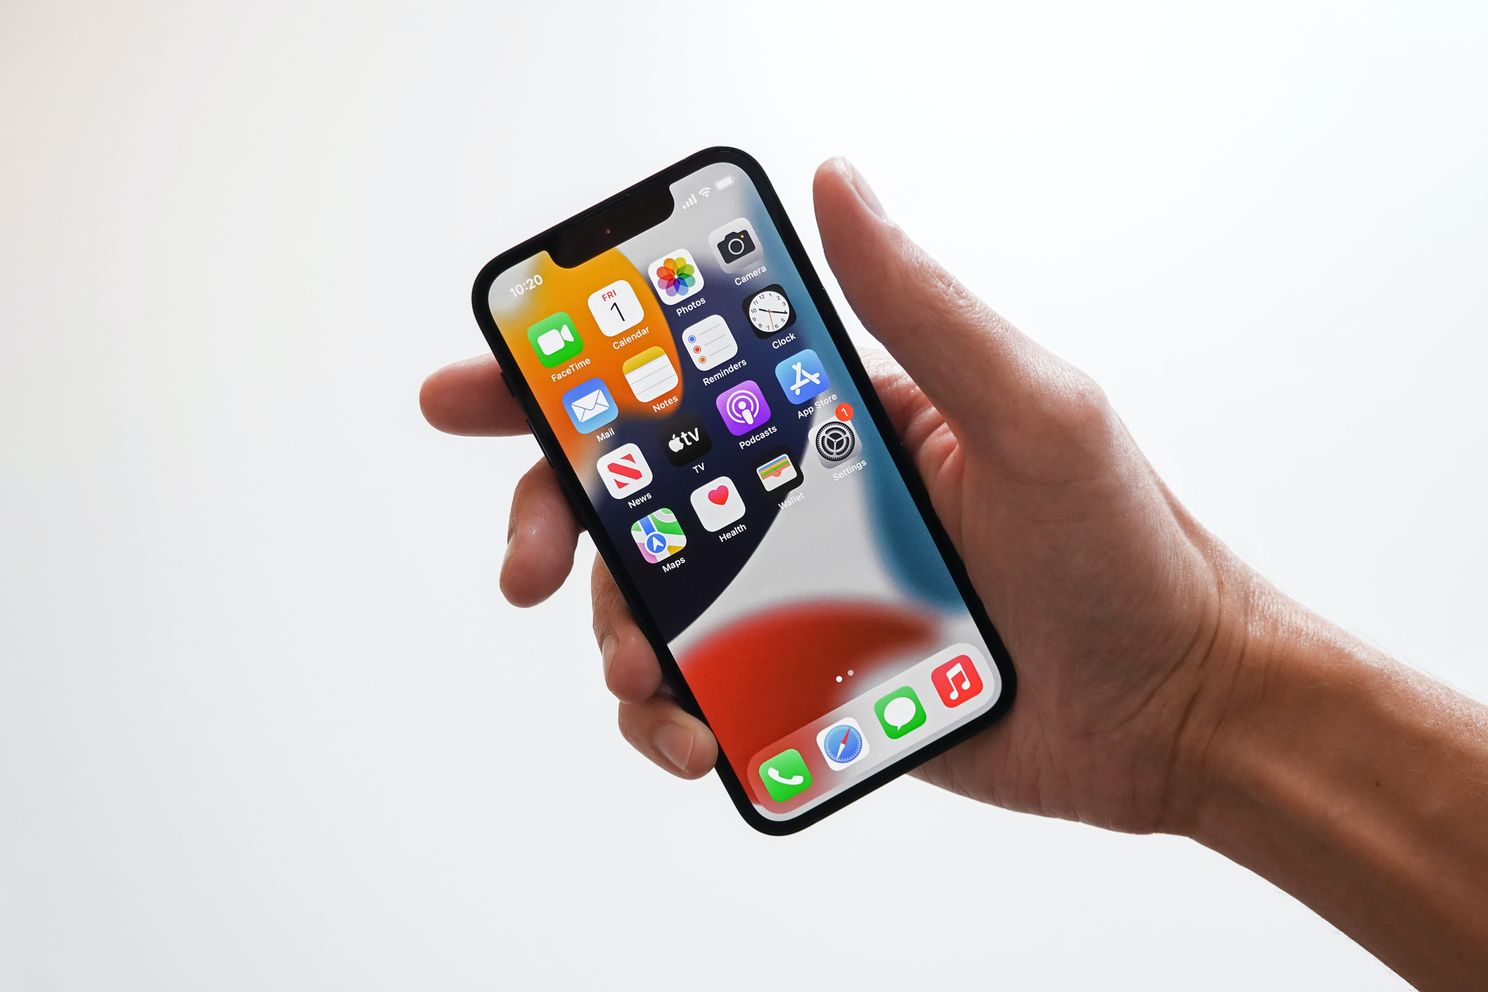 rukken Besmettelijke ziekte Uitdaging Apple verkoopt losse iPhone-onderdelen aan consumenten in 2022